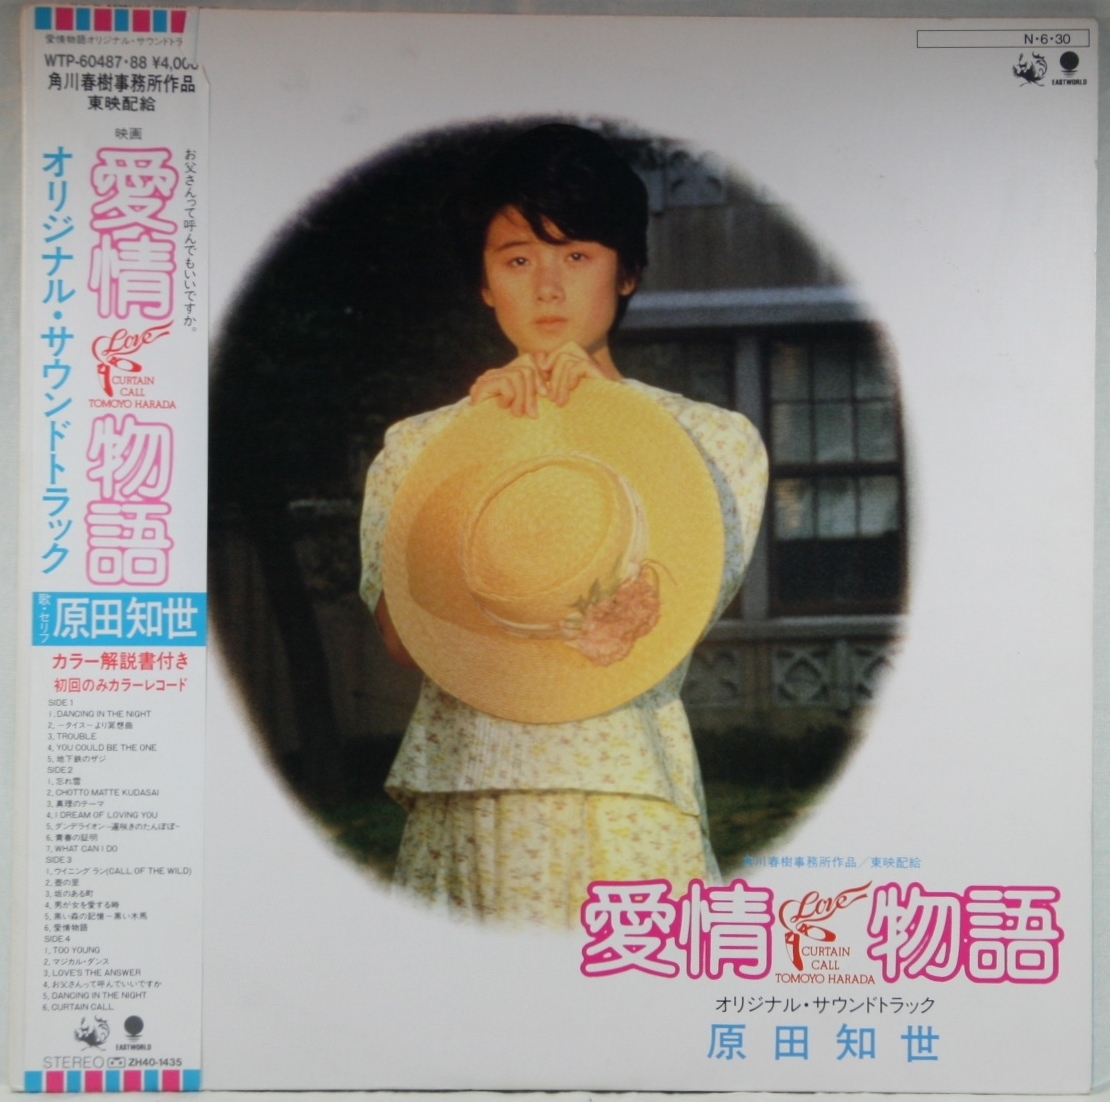 中古LP「愛情物語 / LOVE CURTAIN CALL」原田知世　初回カラーレコード_画像1